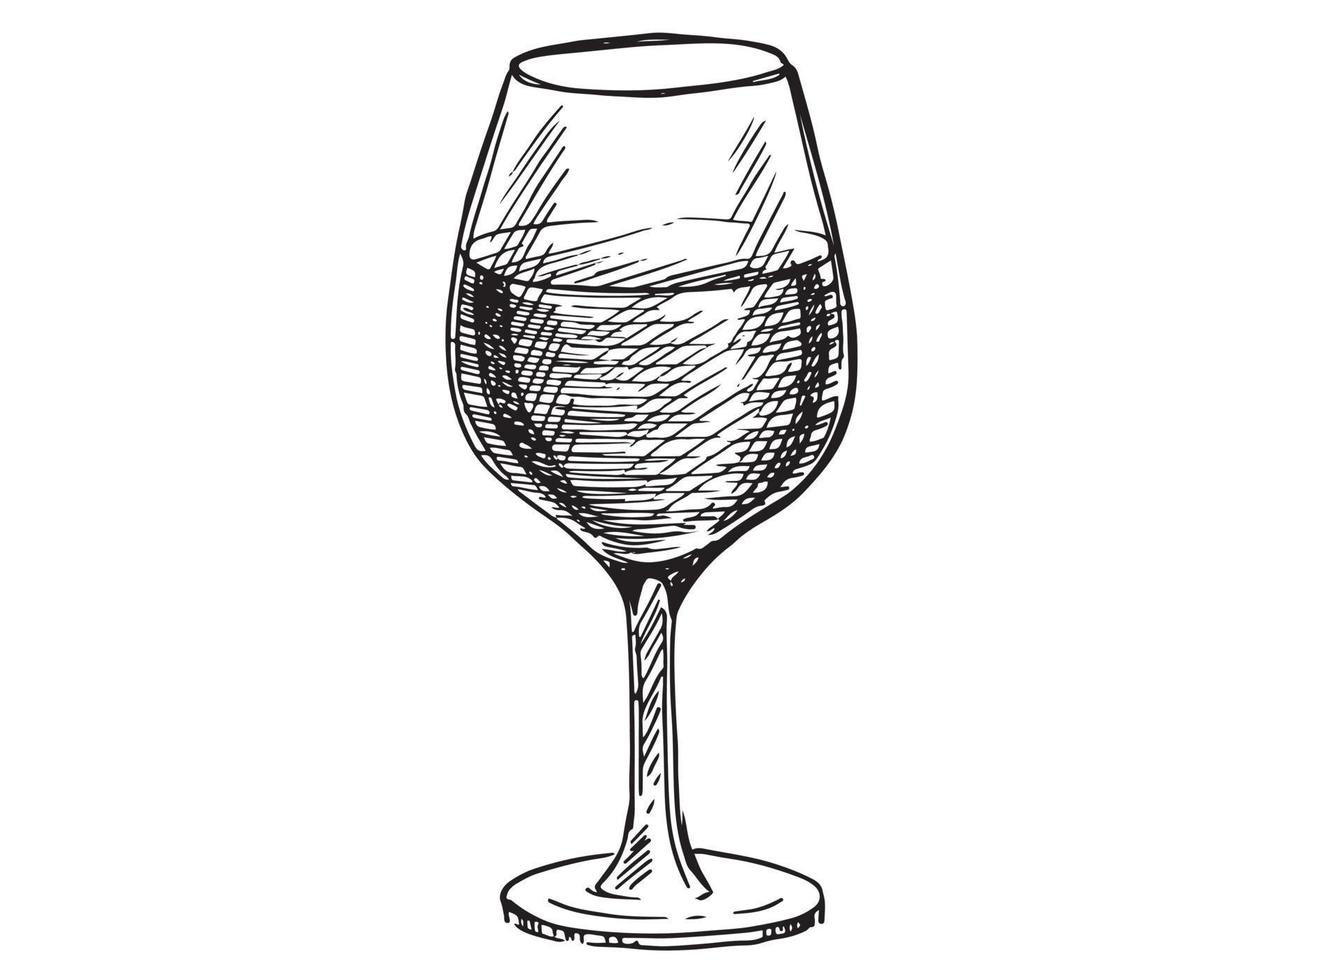 Wine glasses sketch vector illustration. Hand drawn label design elements.